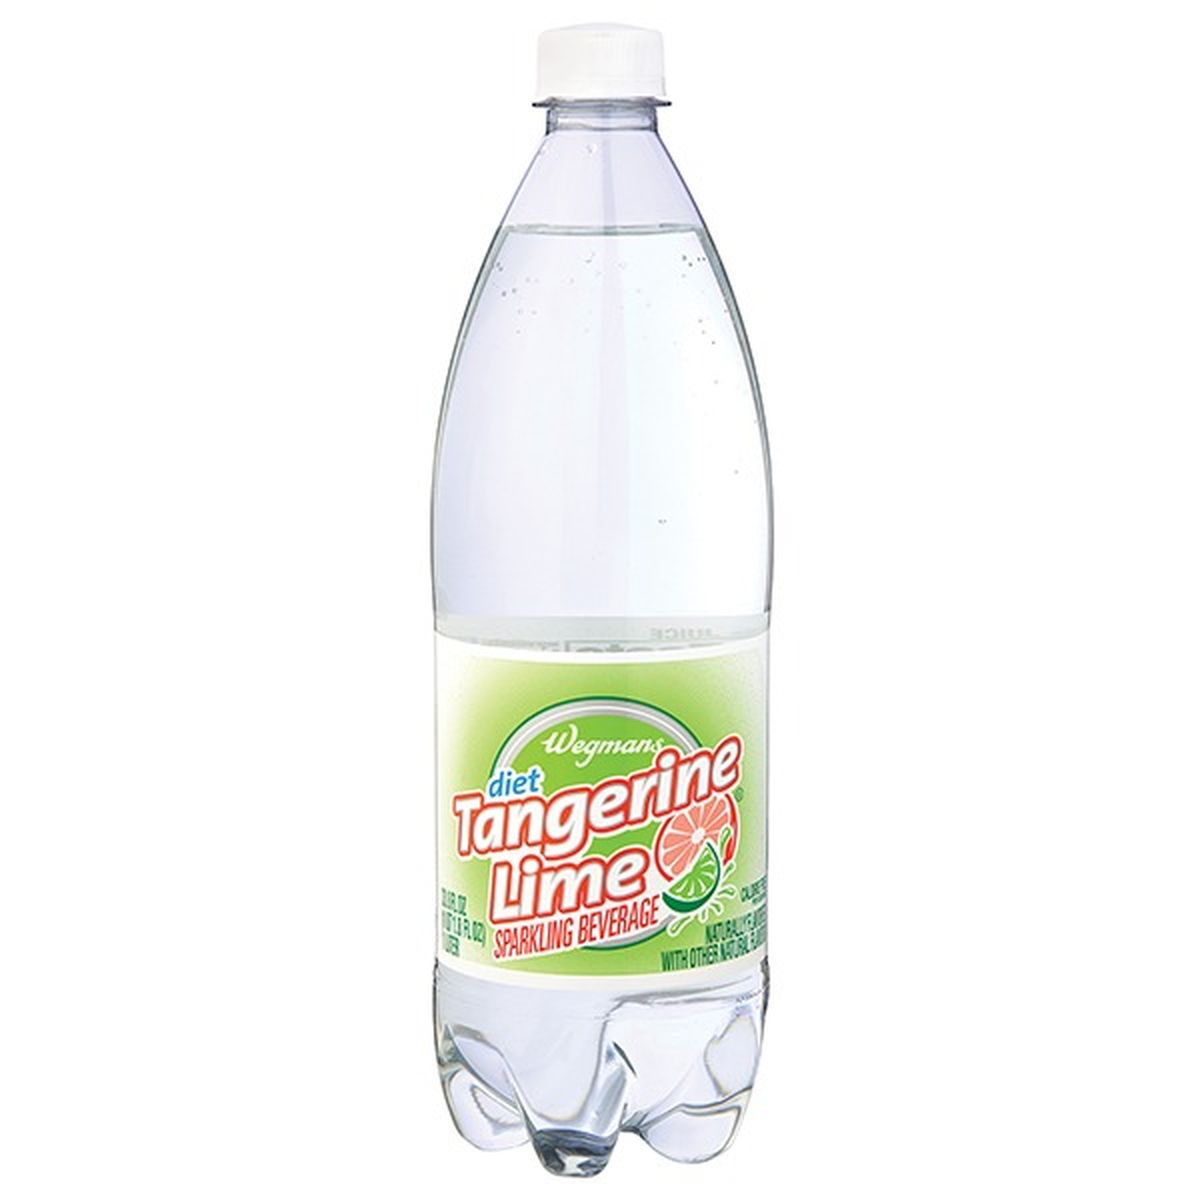 Calories in Wegmans Sparkling Beverage Tangerine Lime, Diet